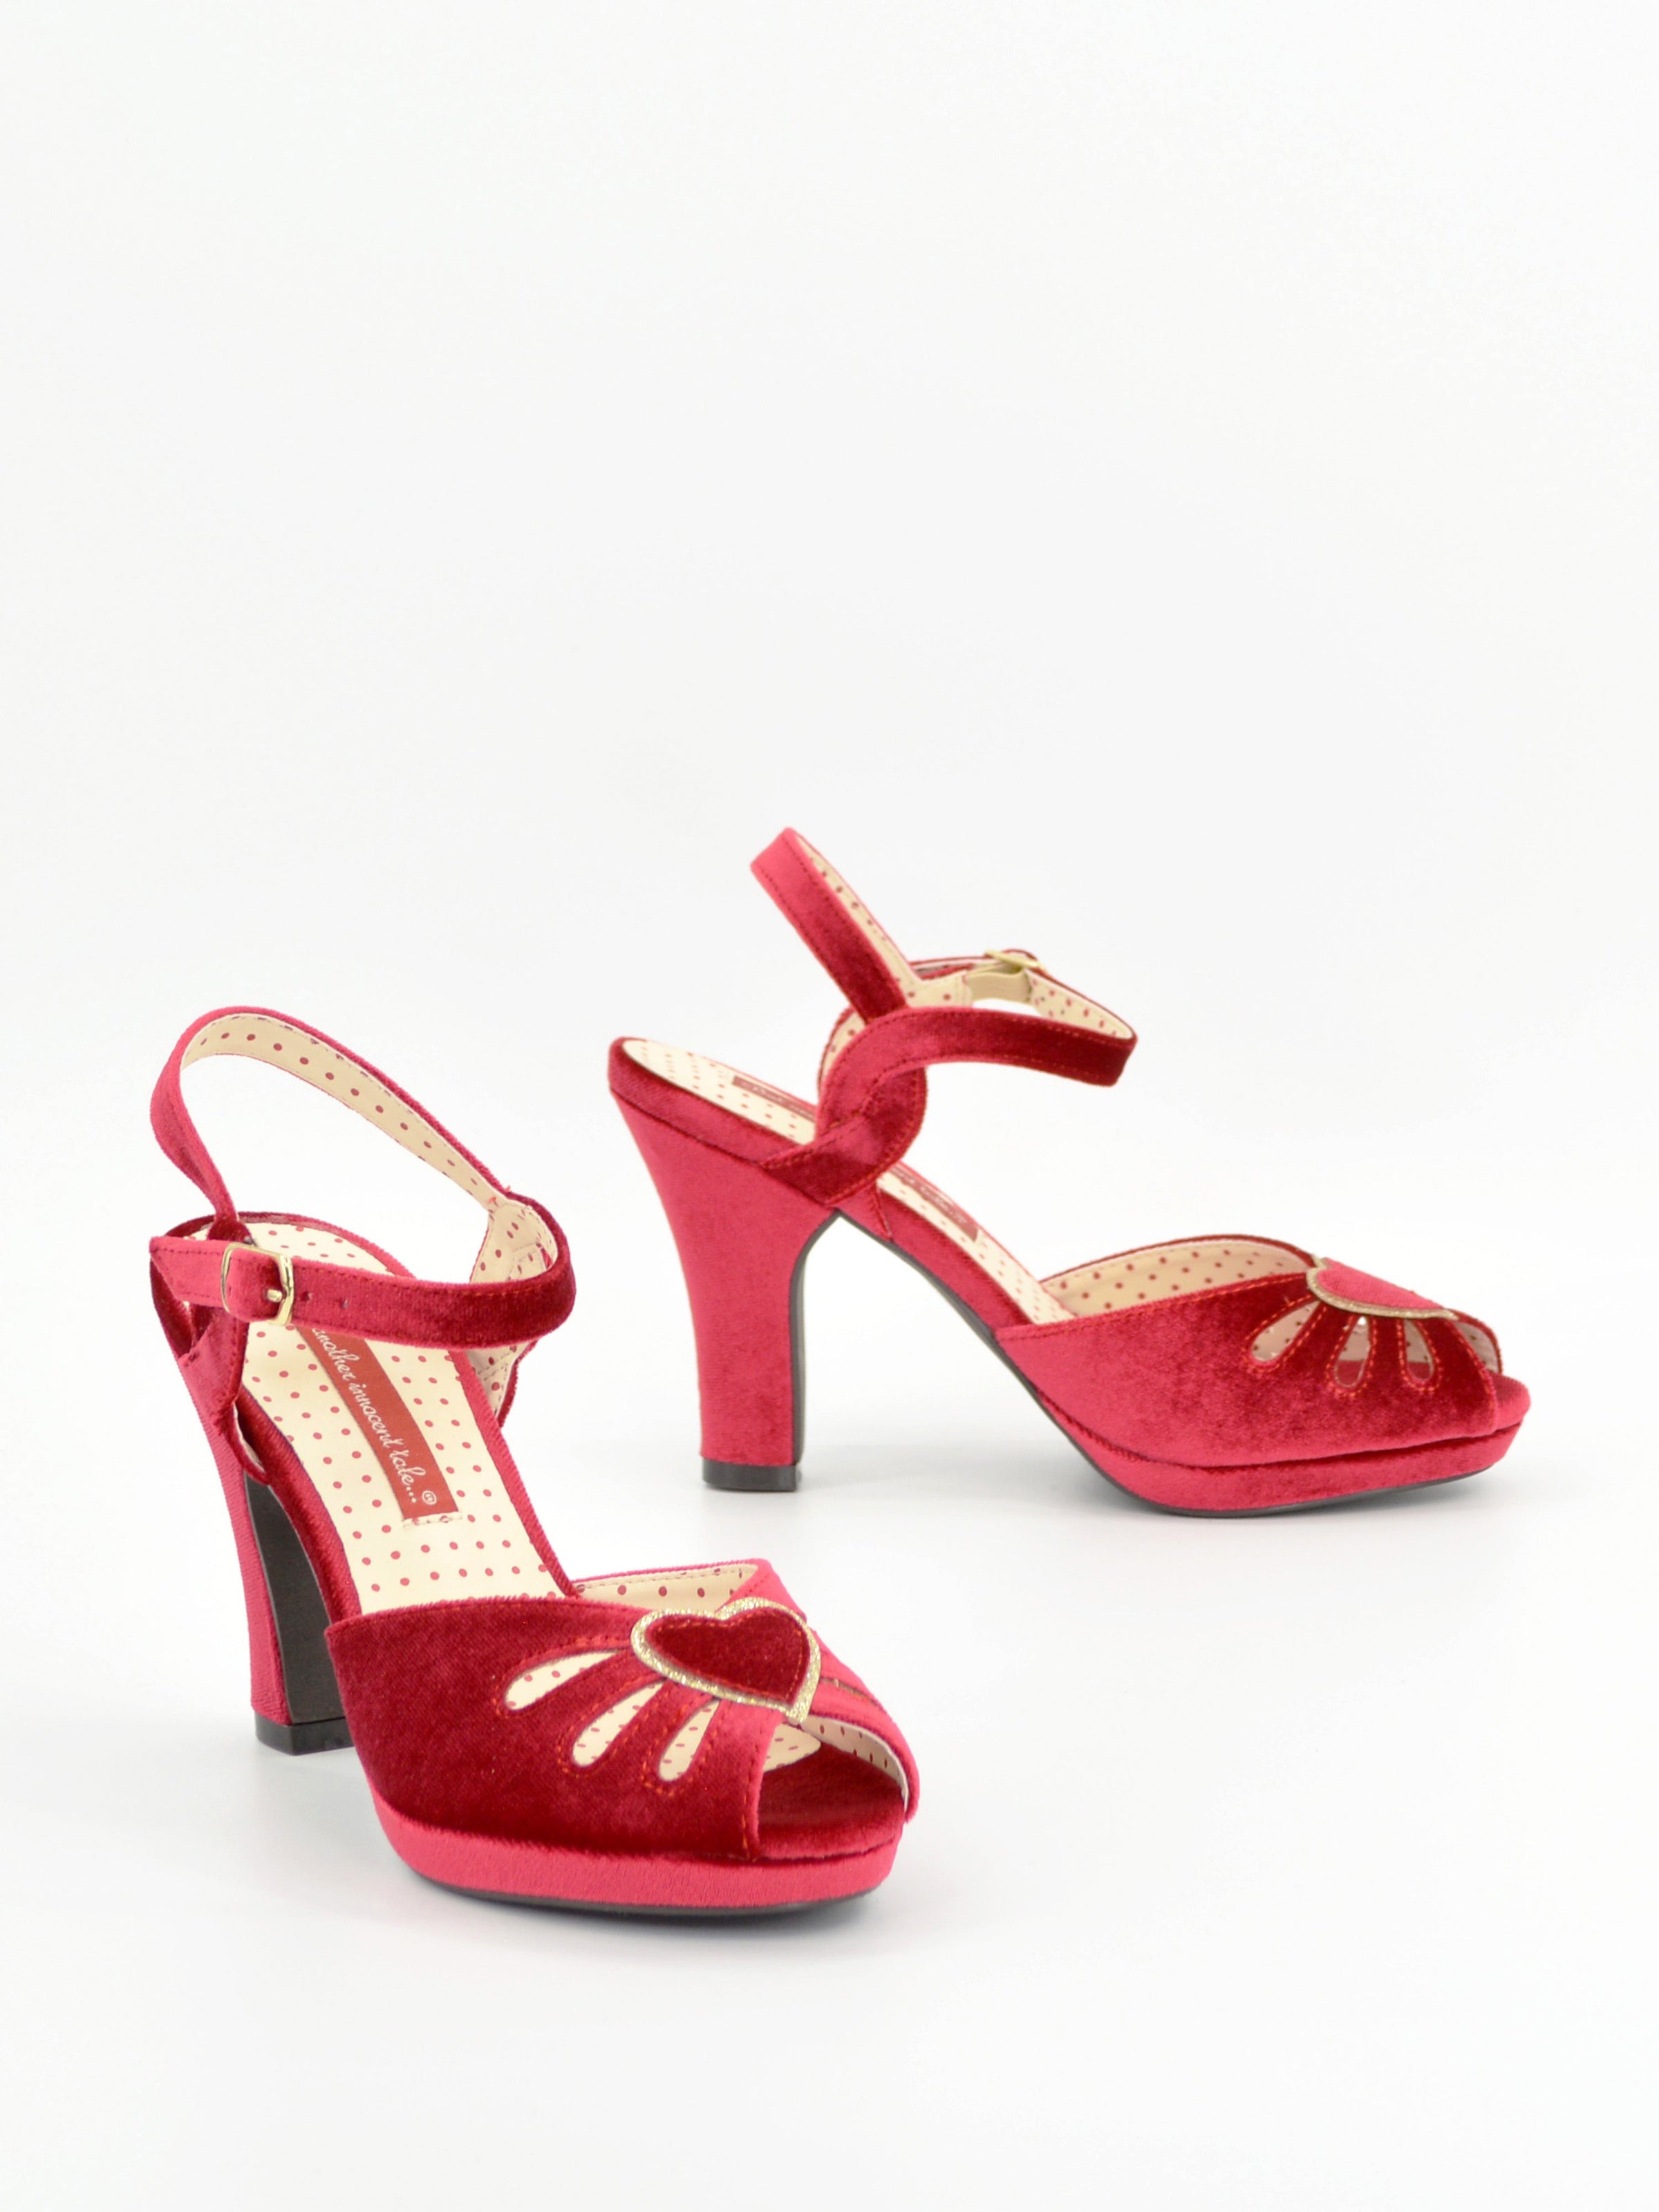 Love Red – B.A.I.T. Footwear